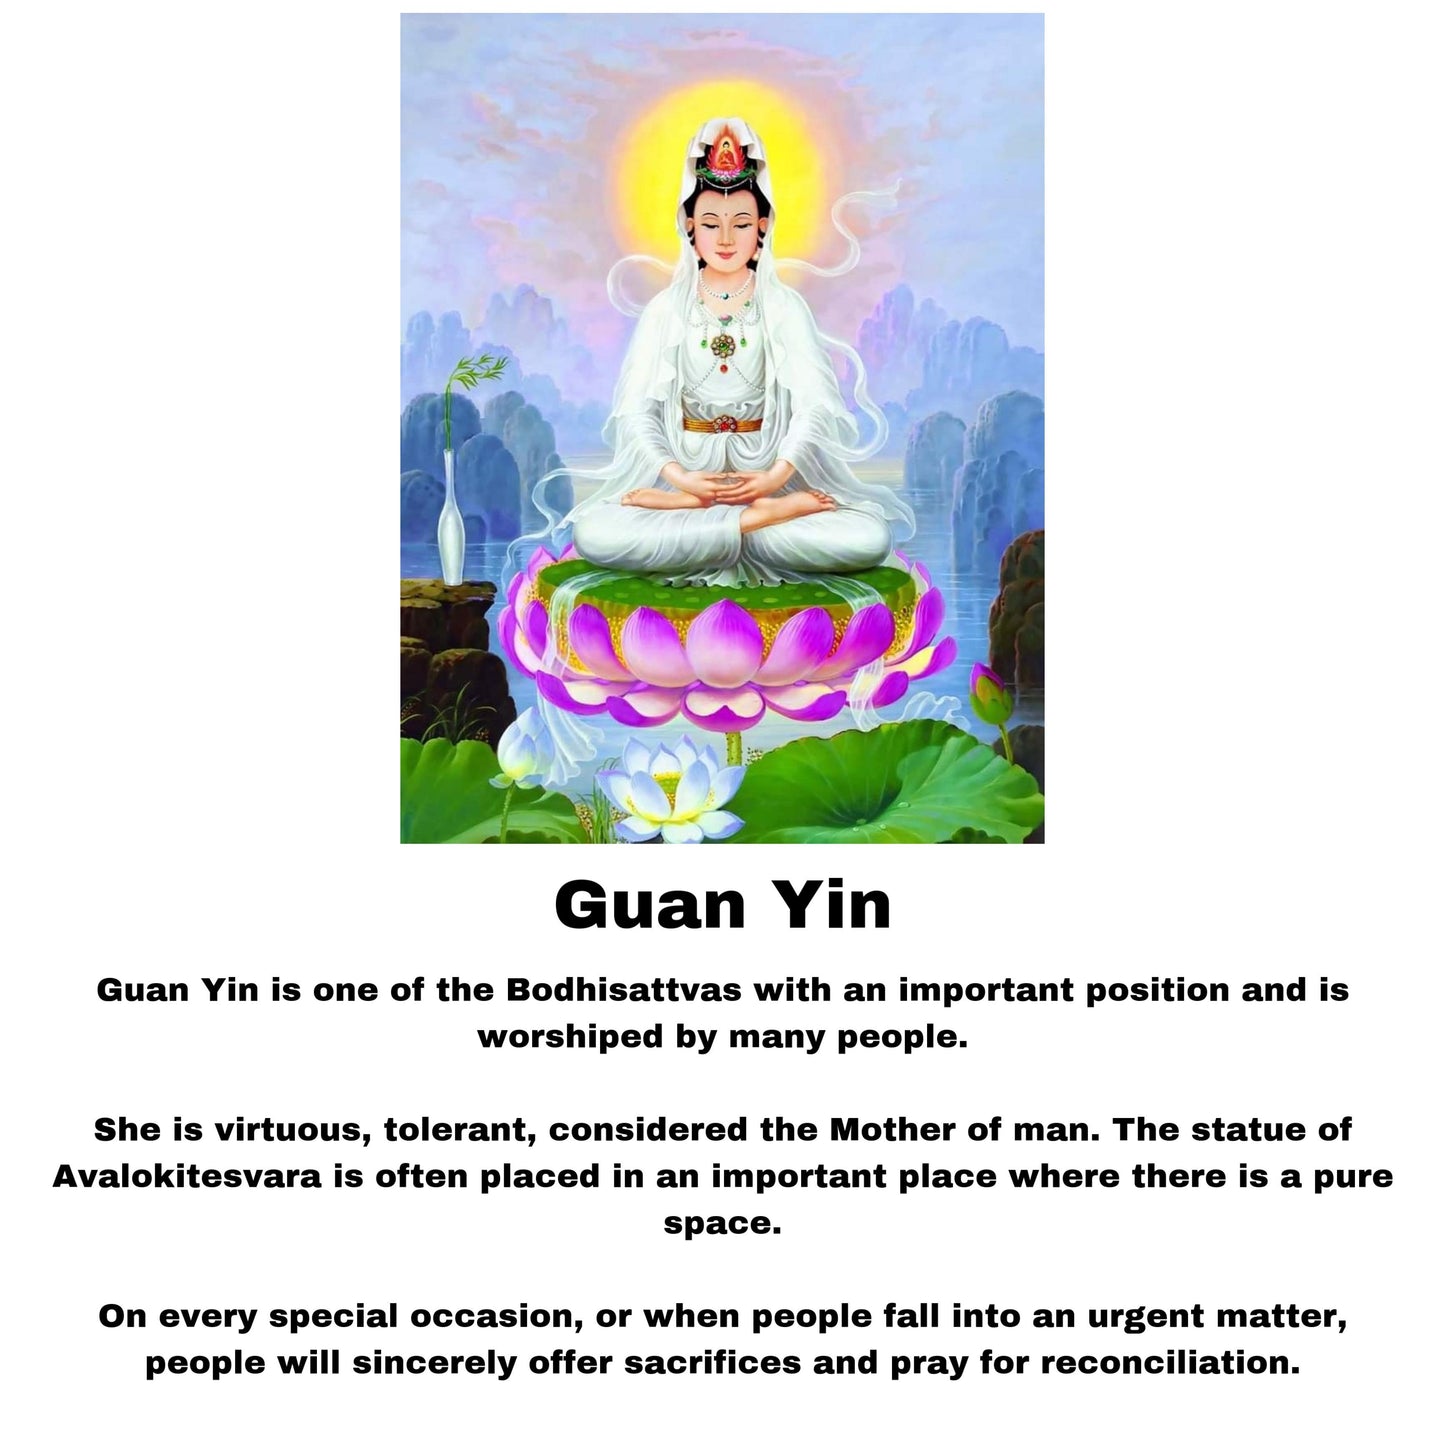 Jade Guan Yin Statue #S1025